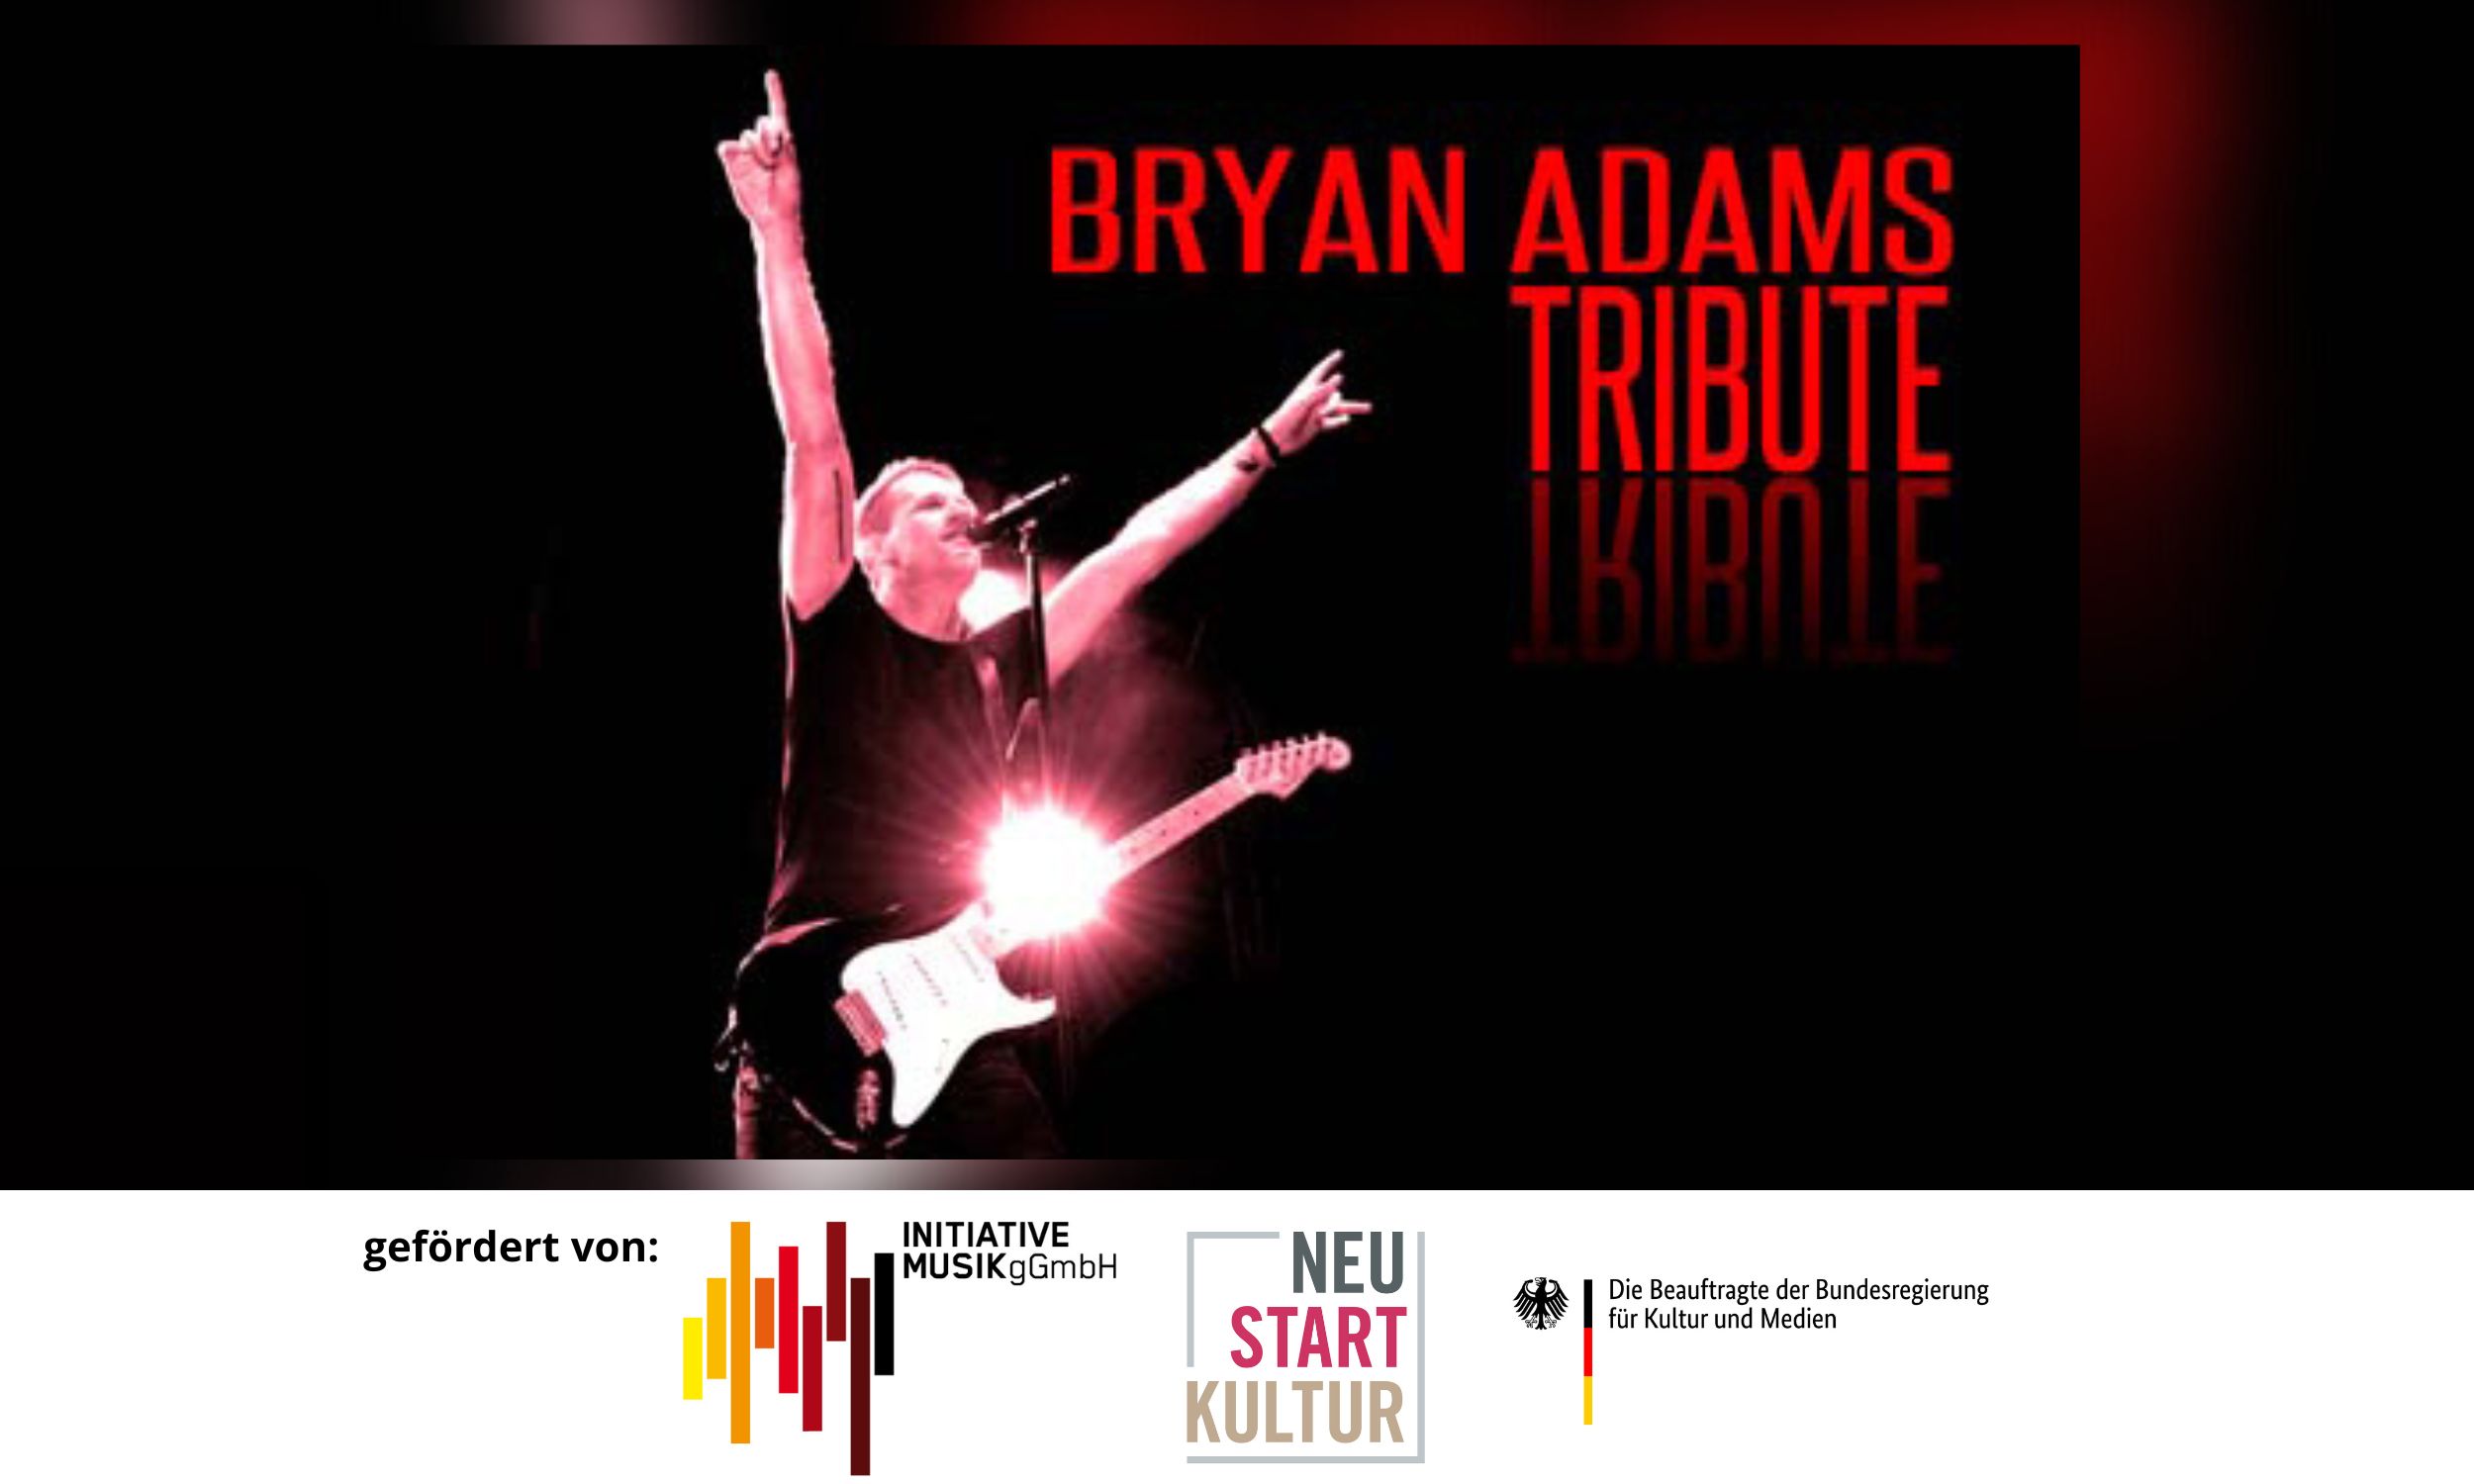 BRYAN ADAMS Tribute